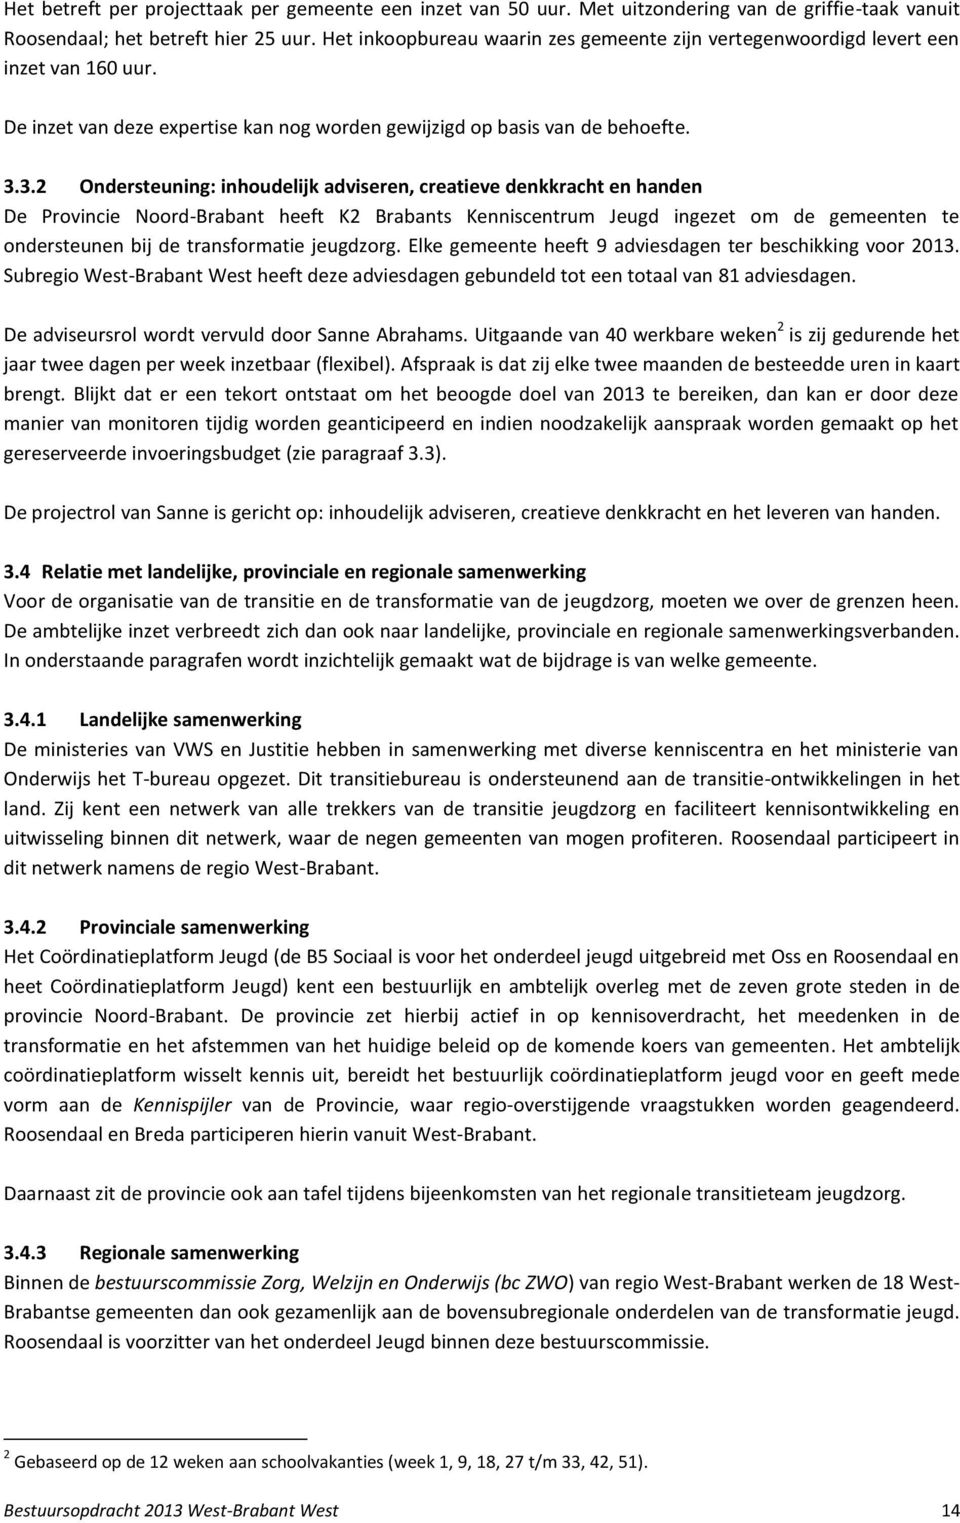 3.2 Ondersteuning: inhoudelijk adviseren, creatieve denkkracht en handen De Provincie Noord-Brabant heeft K2 Brabants Kenniscentrum Jeugd ingezet om de gemeenten te ondersteunen bij de transformatie